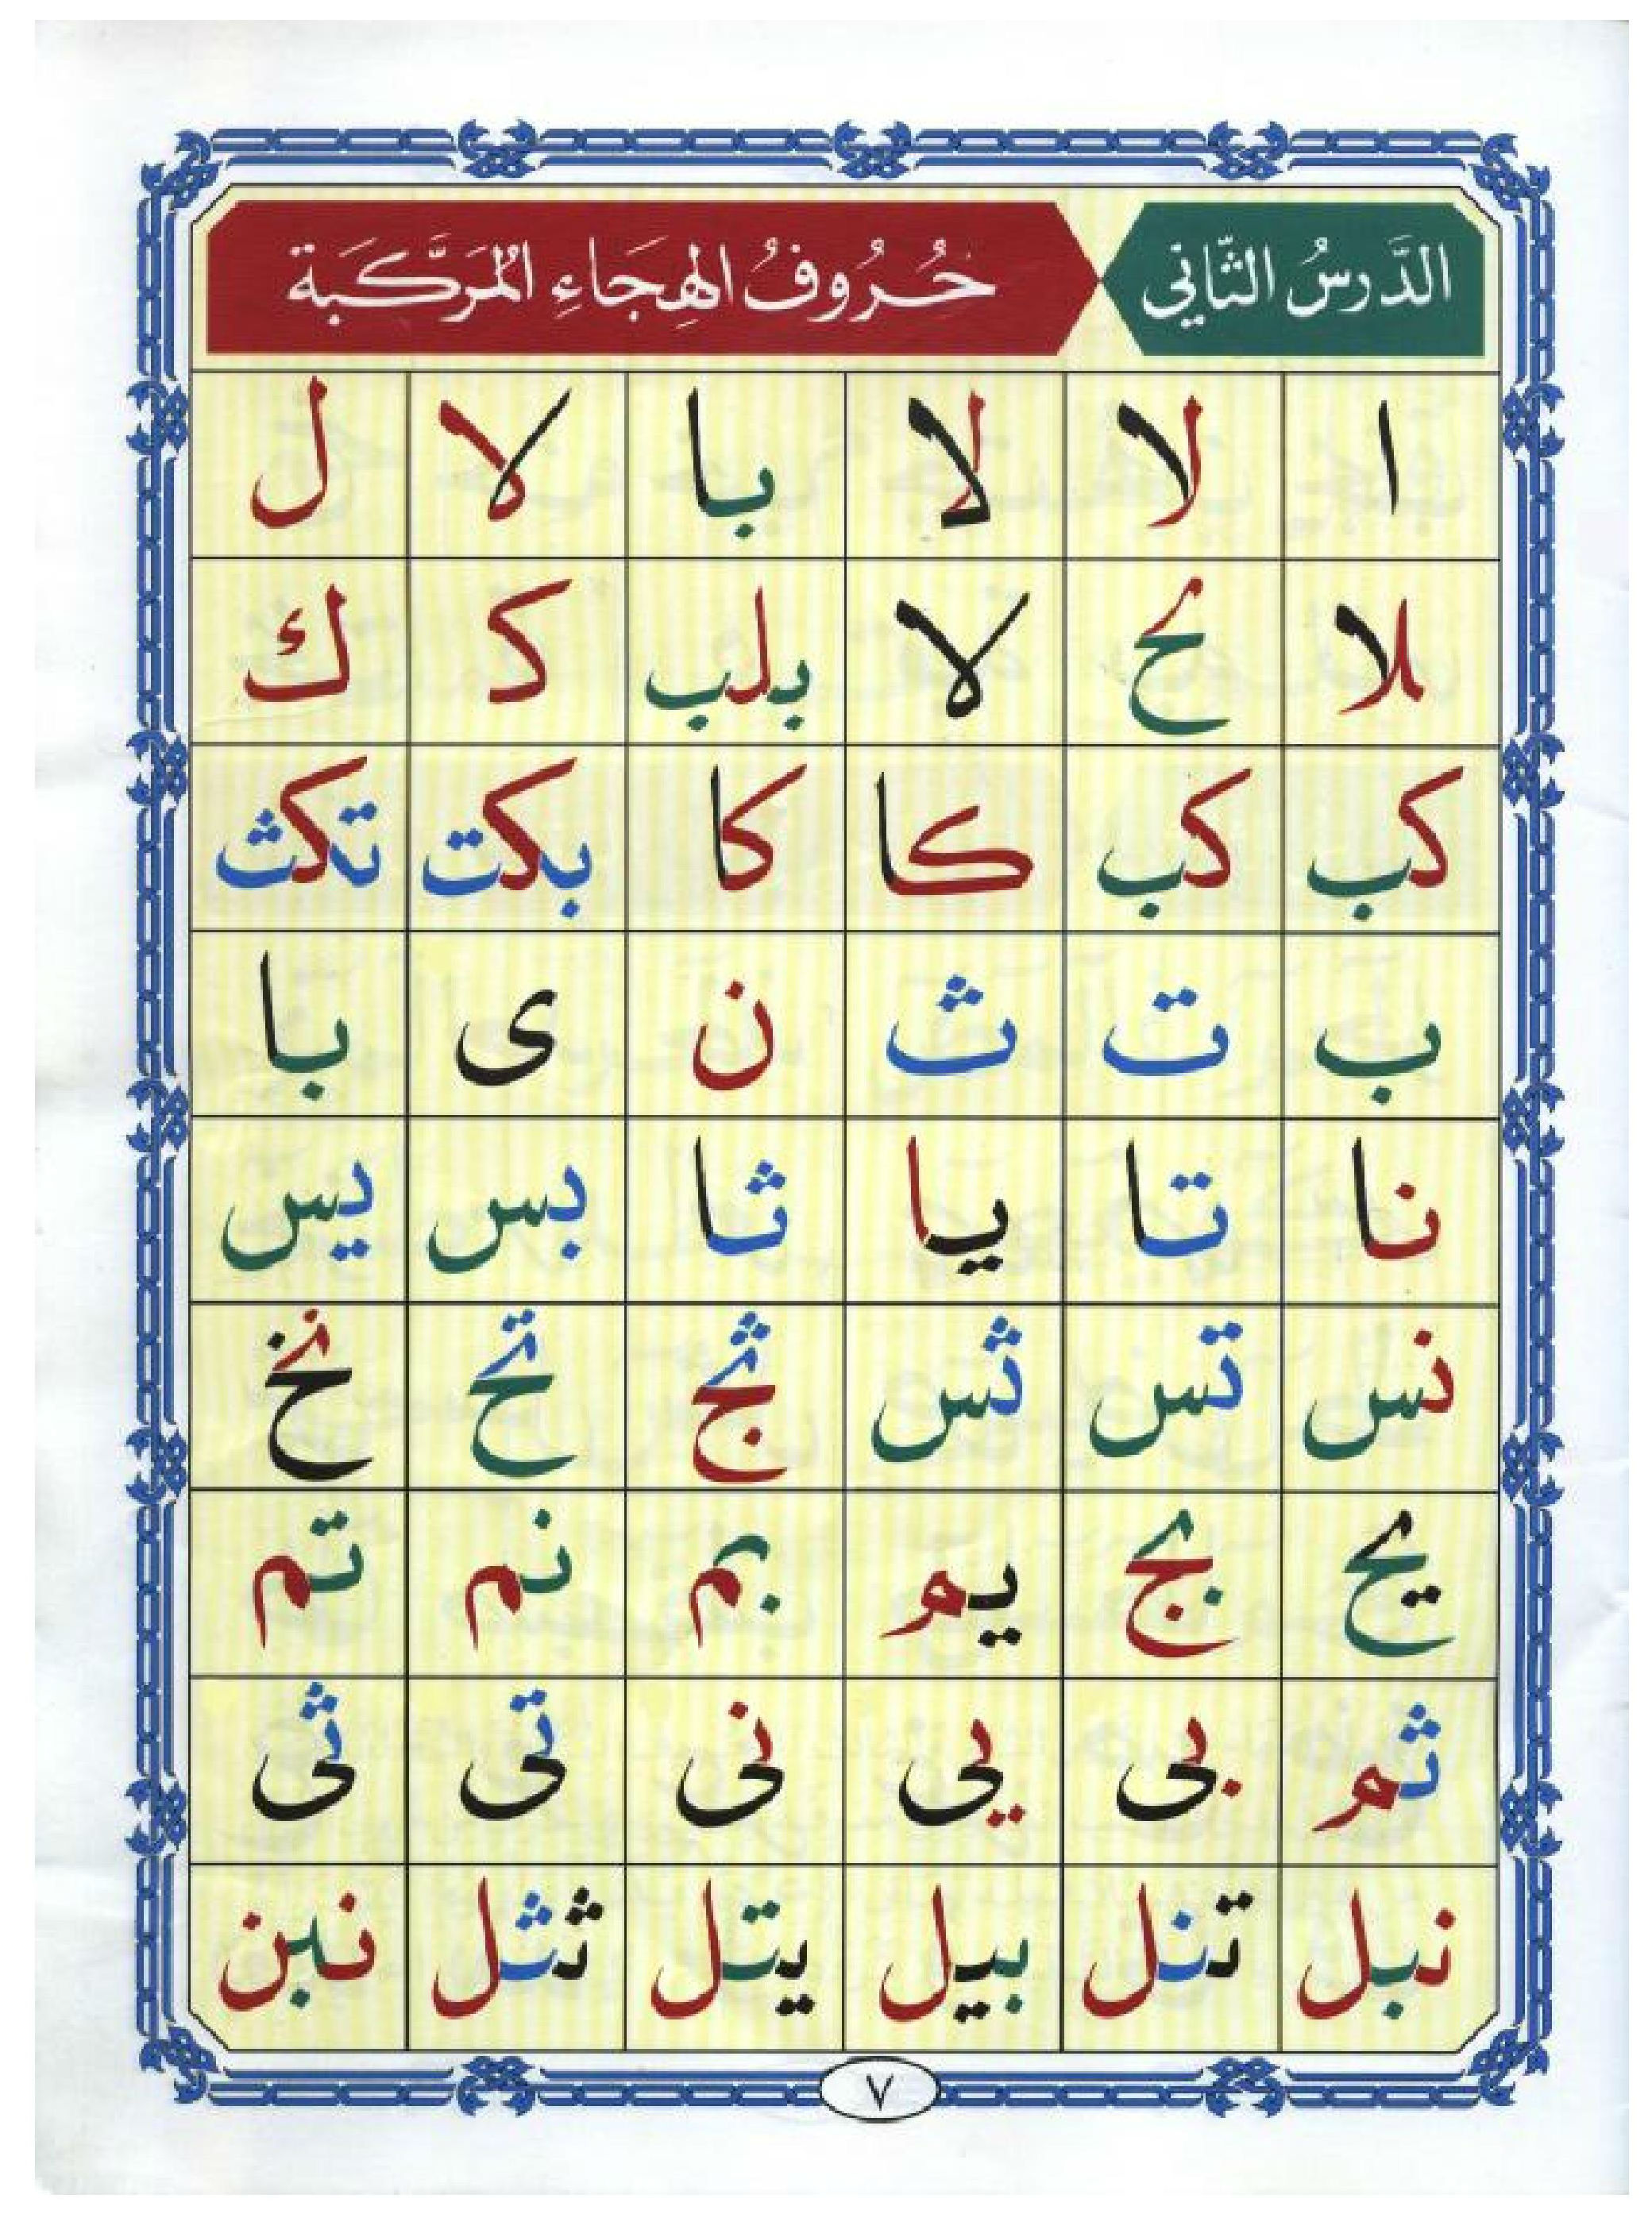 Noorani Qaida in Arabic